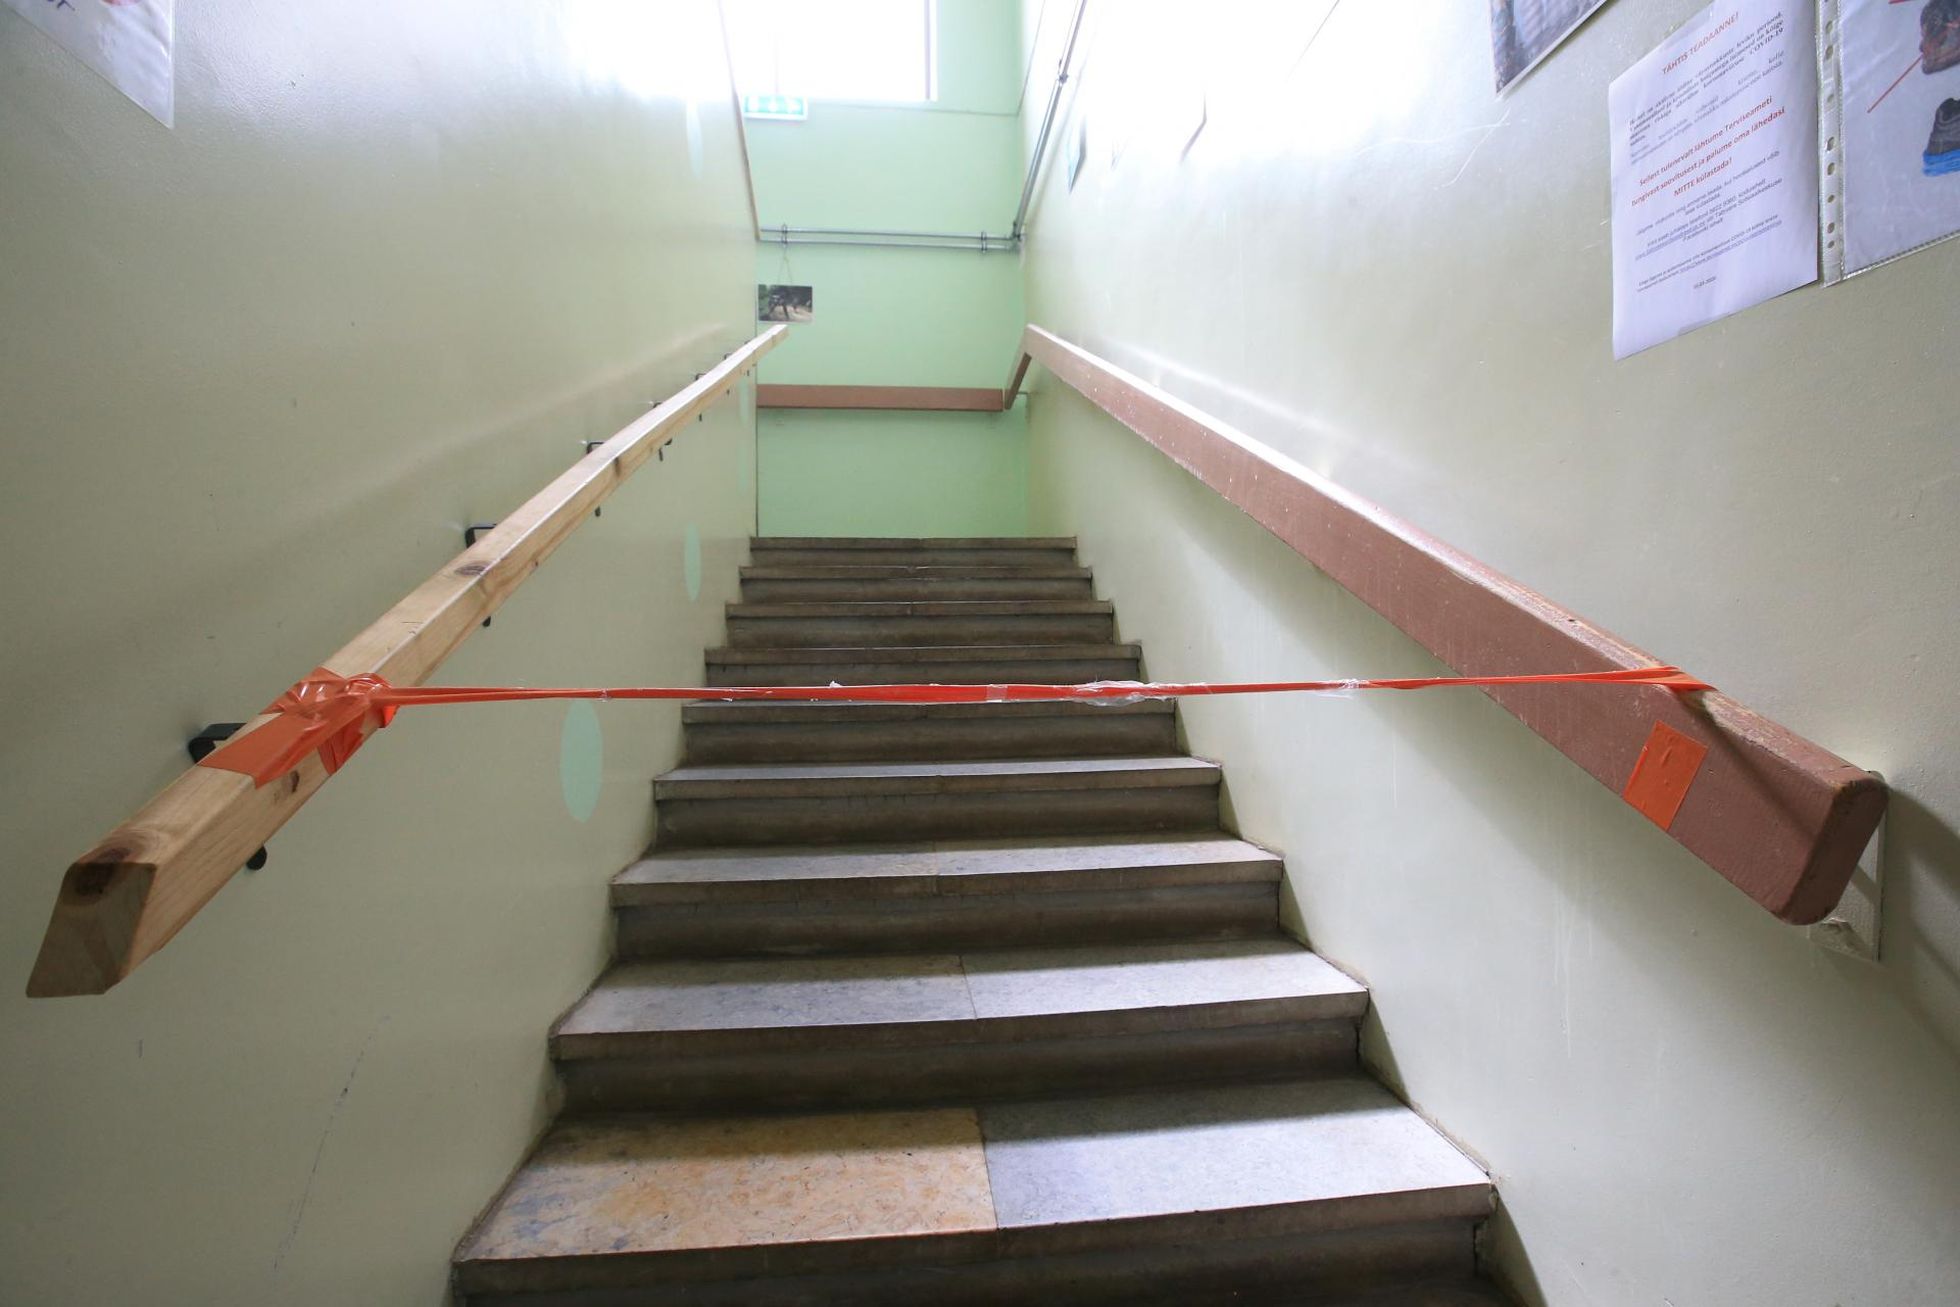 Лестница, ведущая с первого этажа дома призрения на второй, шесть недель была закрыта.
 